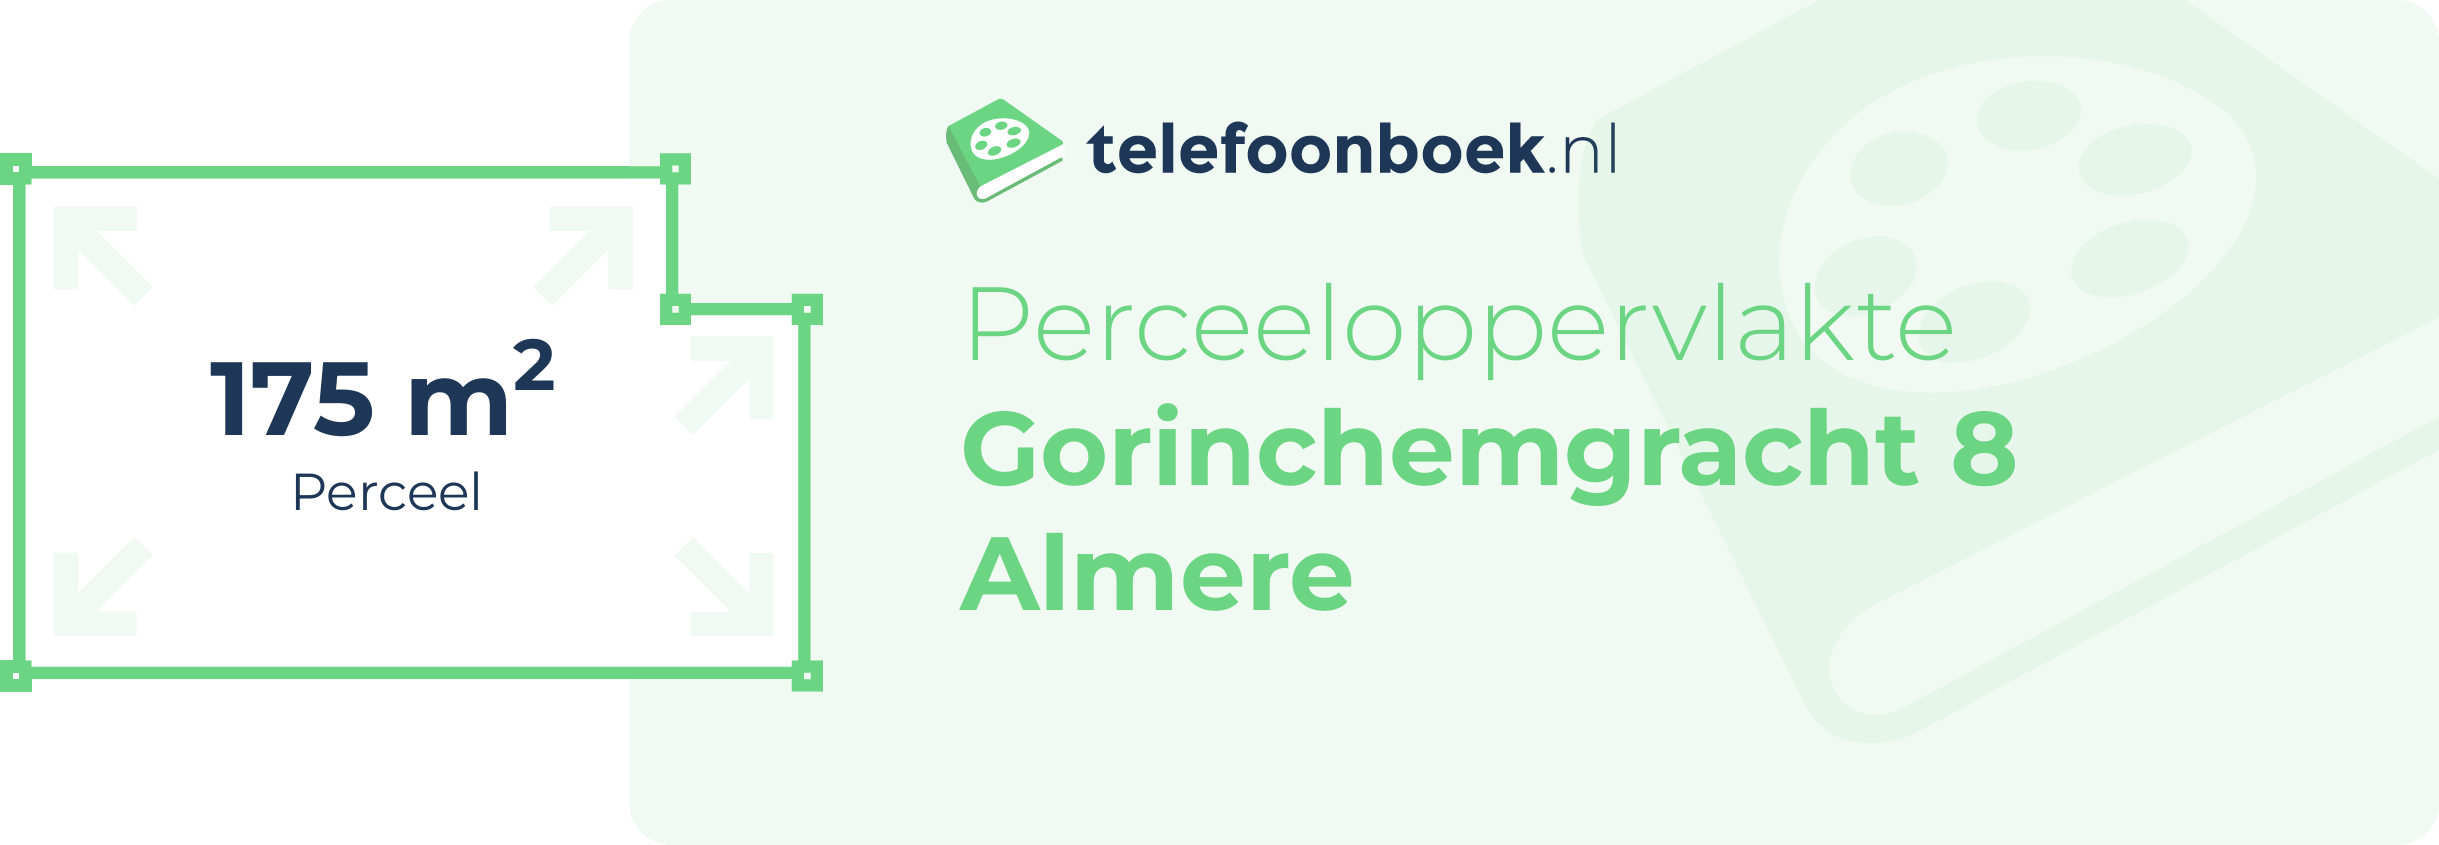 Perceeloppervlakte Gorinchemgracht 8 Almere